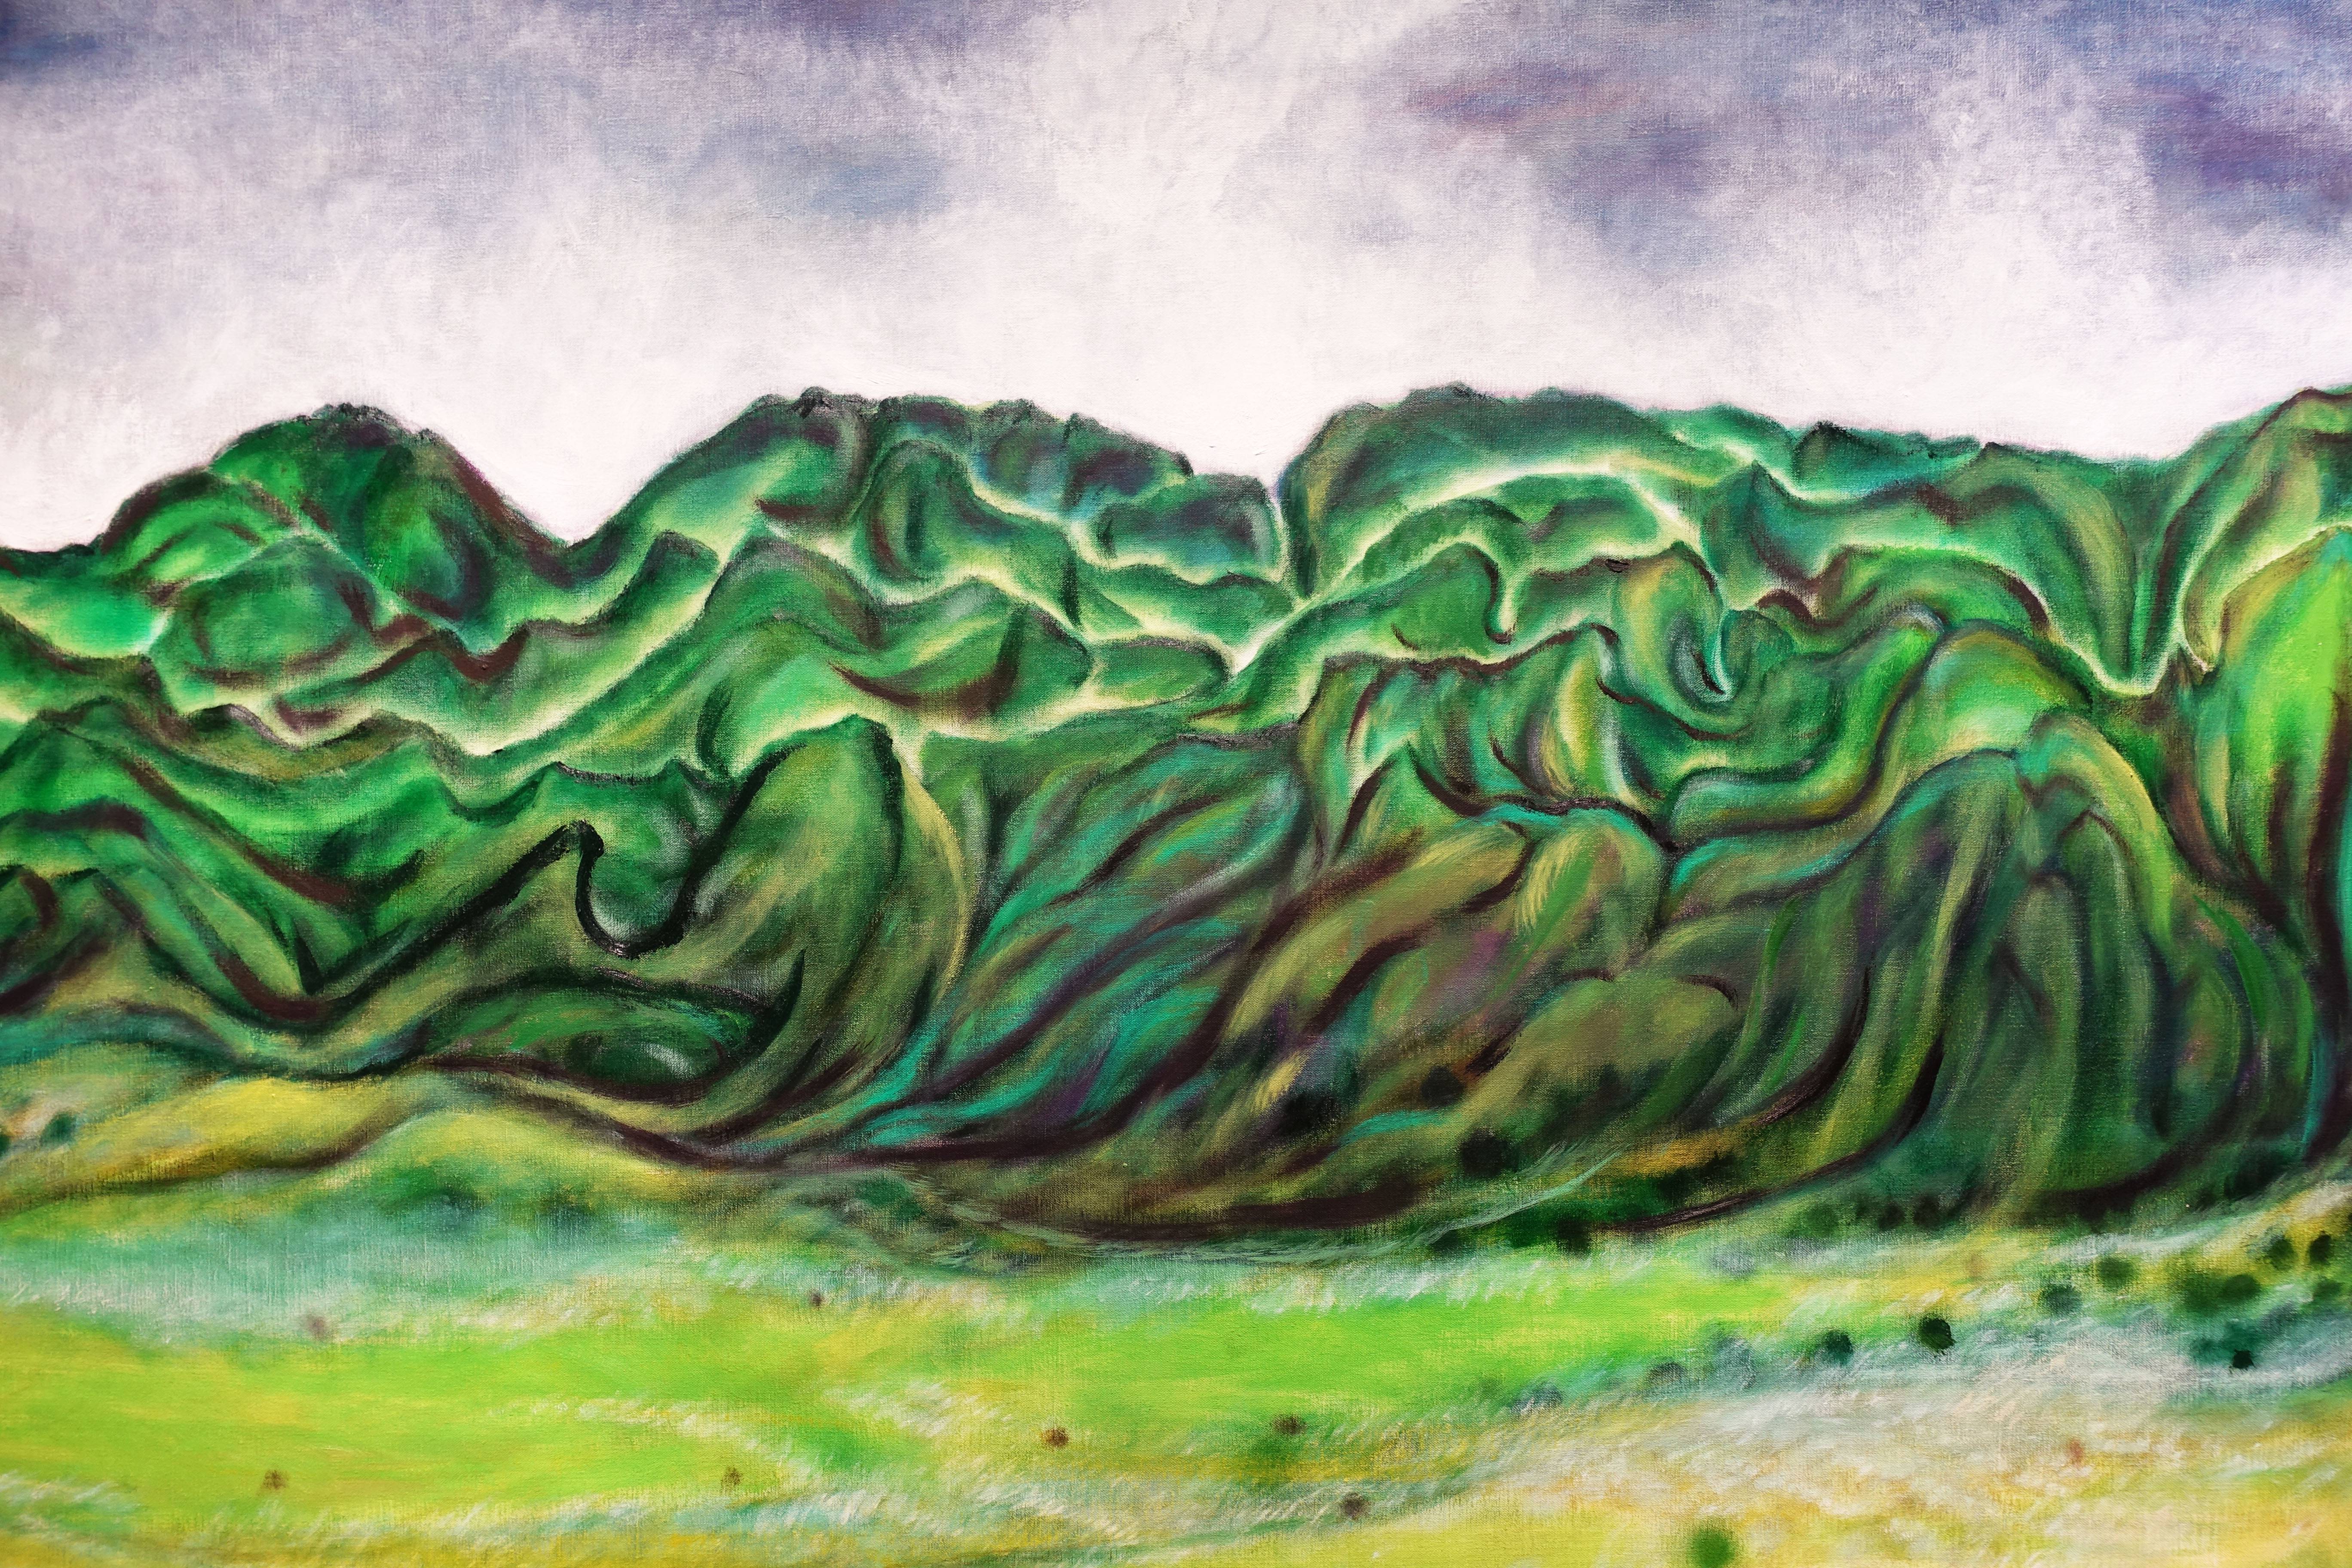 蔣勳，《縱谷之秋》局部，油彩畫布，92x270cm，2017。